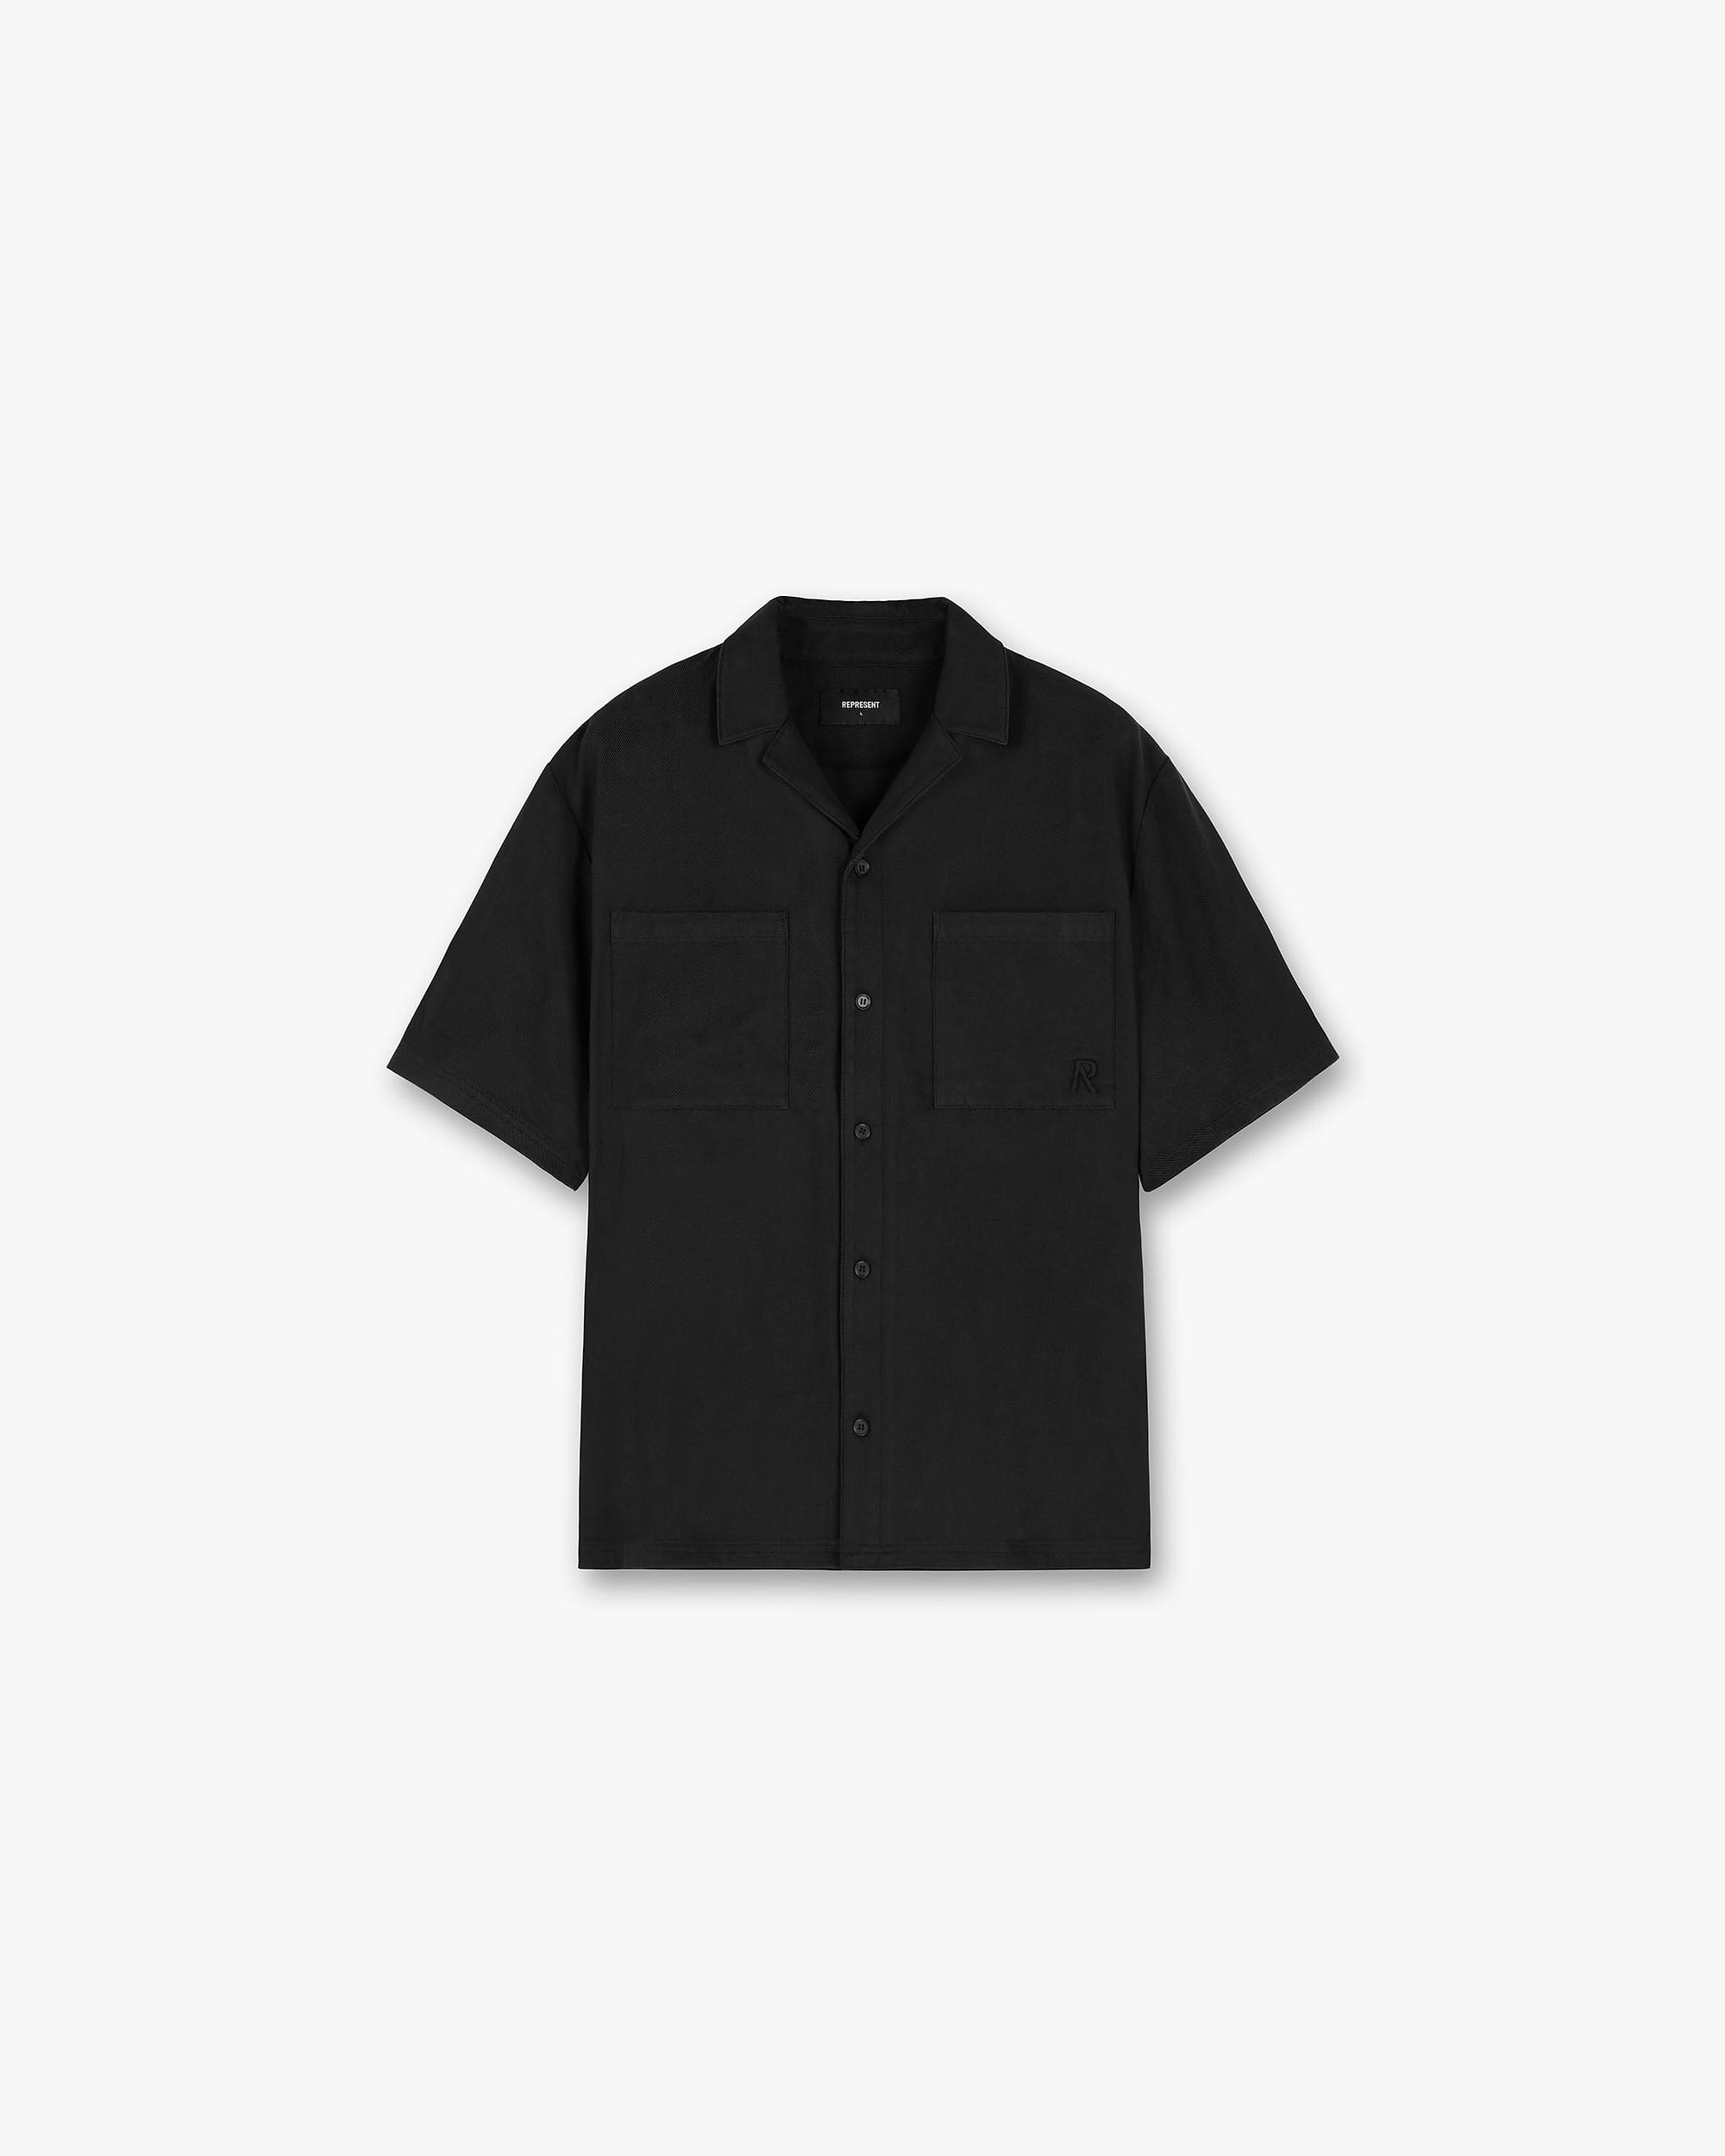 Yacht Shirt | Black Shirts SC23 | Represent Clo